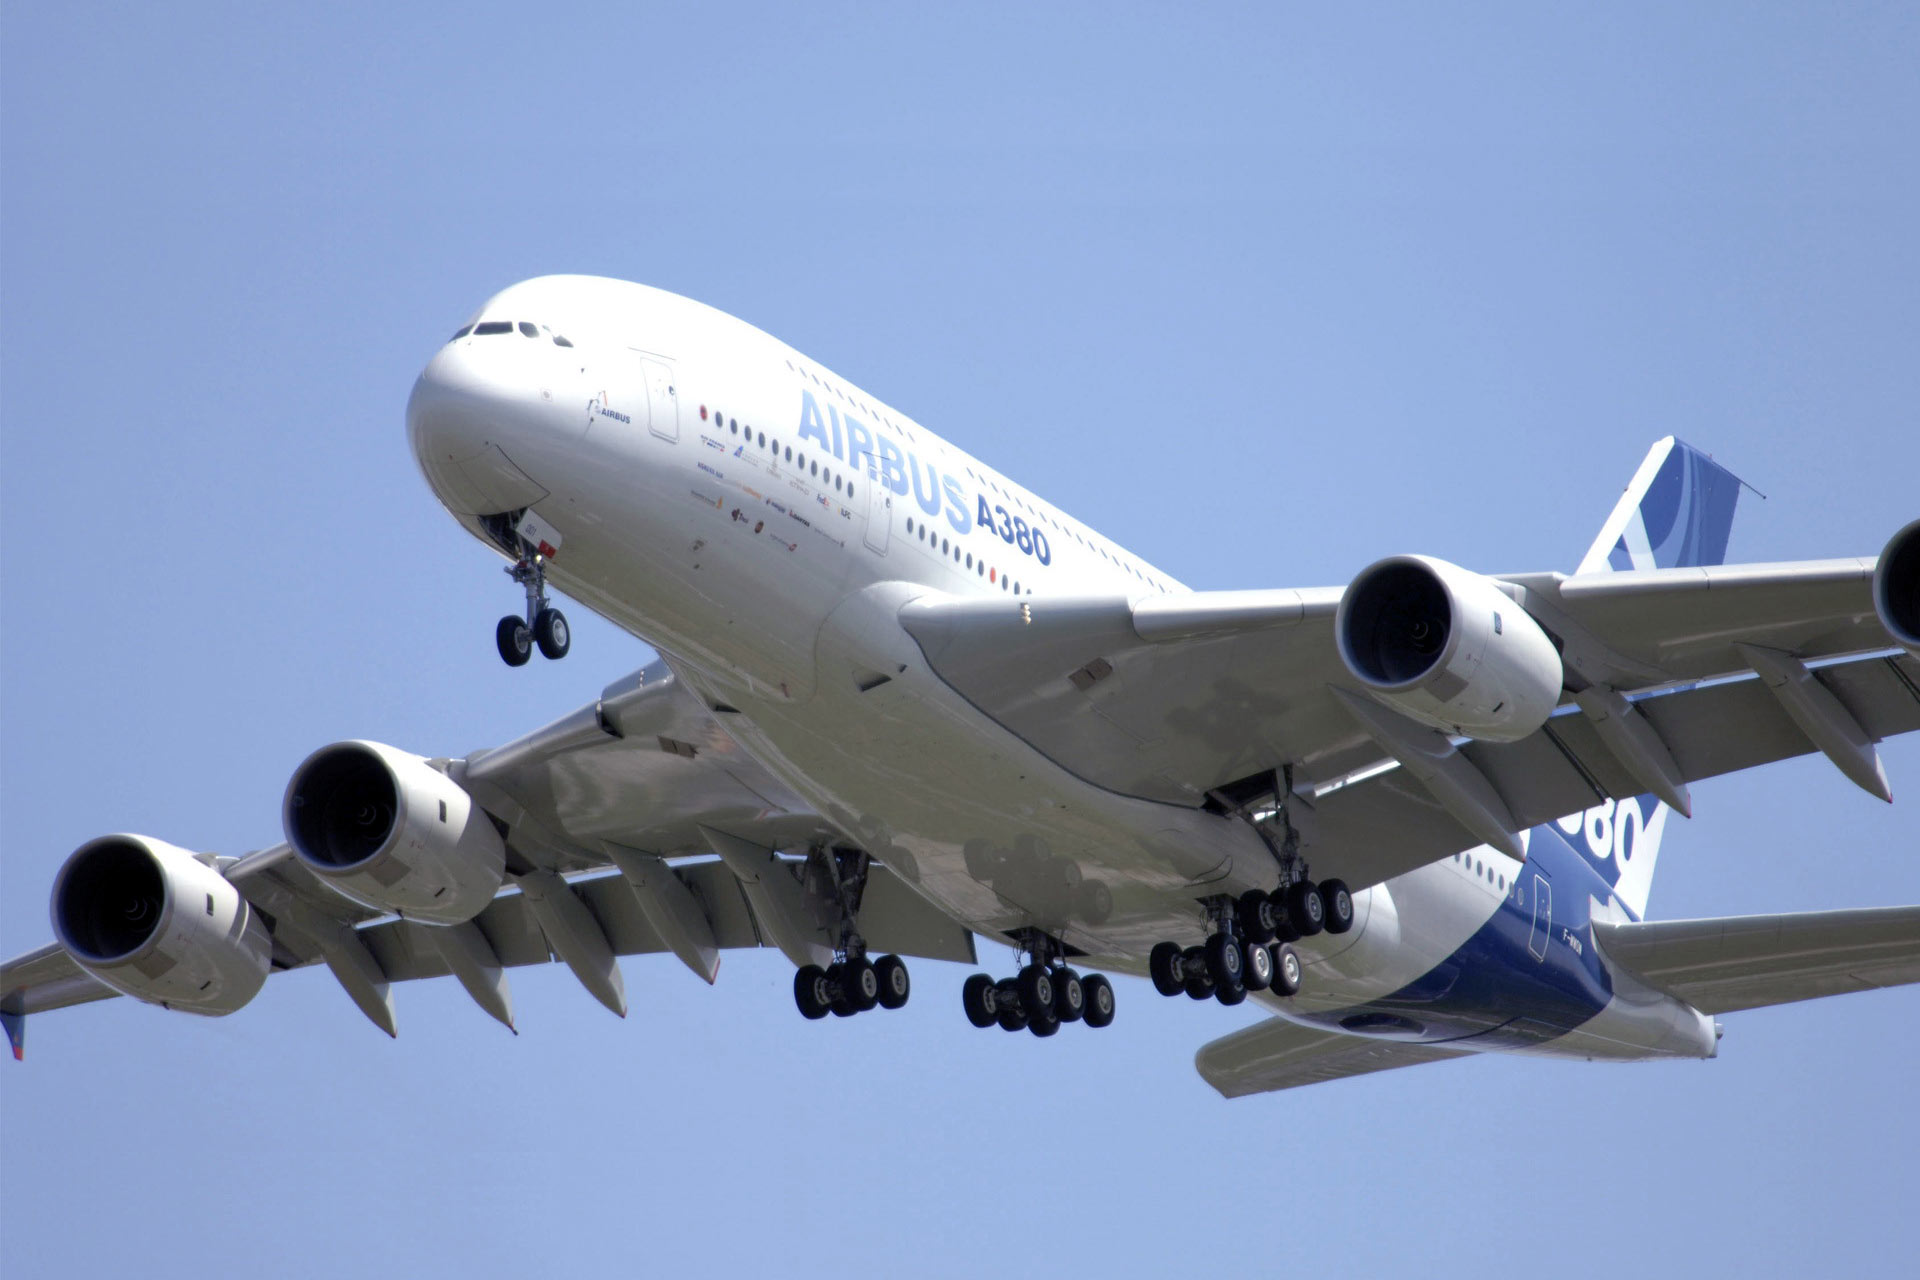 Airbus A380 - Rosswag liefert Schmiedeteile für die Landeklappen